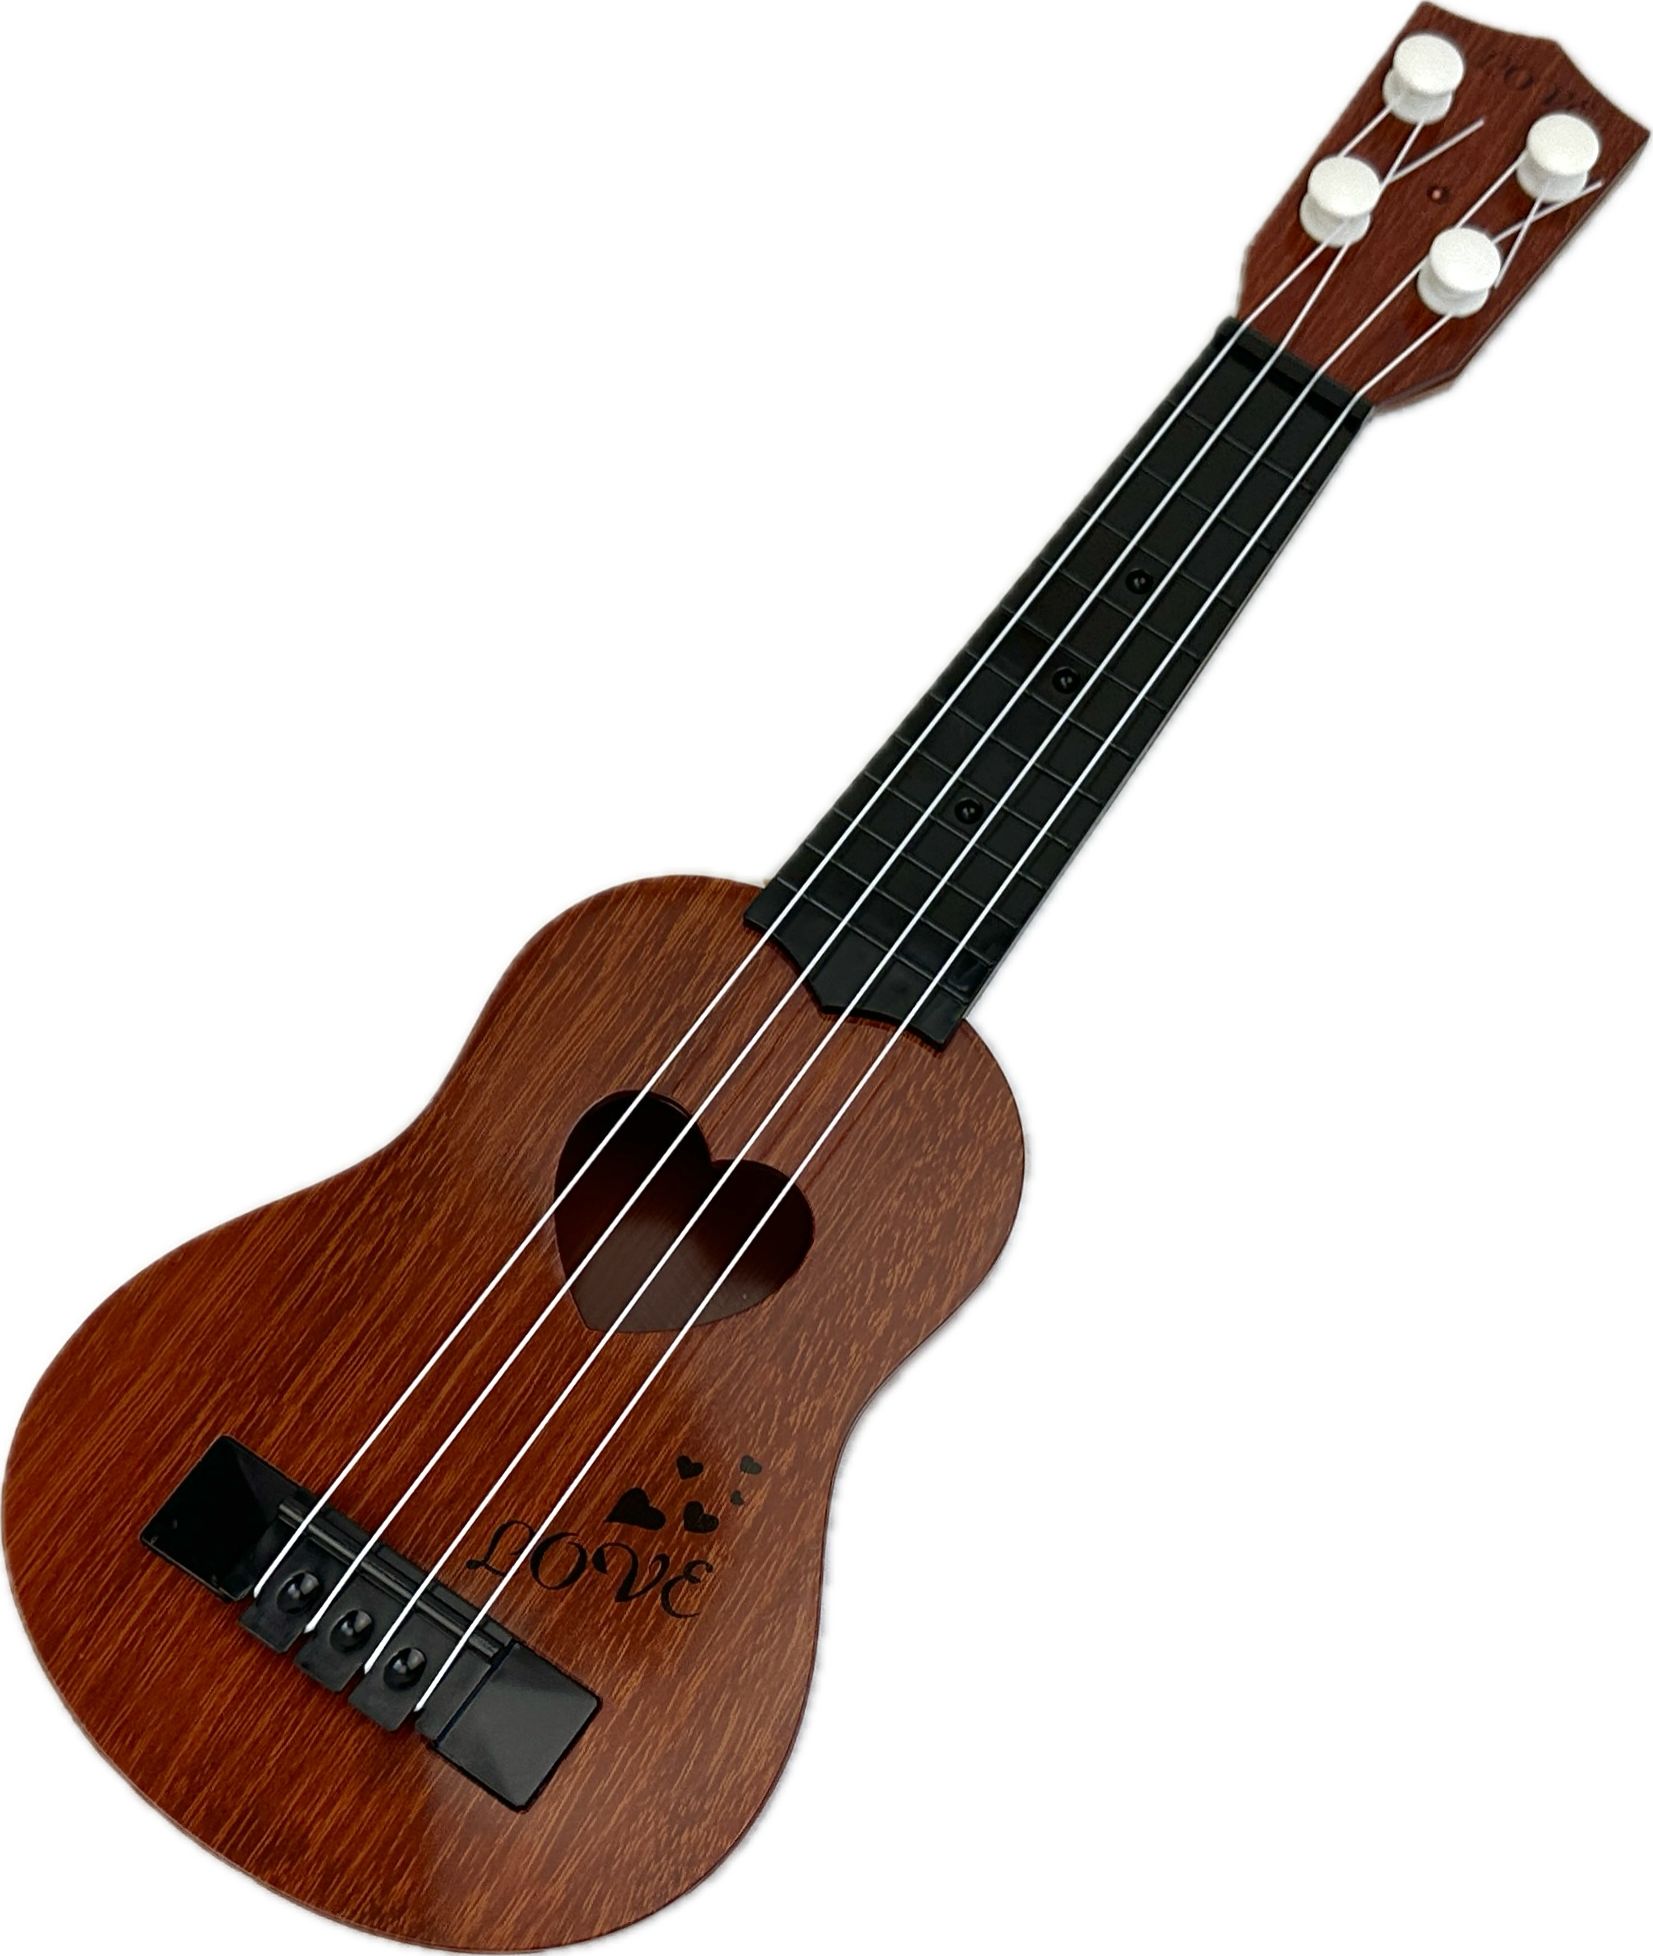 Детский музыкальный инструмент гитара, Укулеле, 4 струны, 38 см музыкальный инструмент tooky toy игрушка гитара укулеле